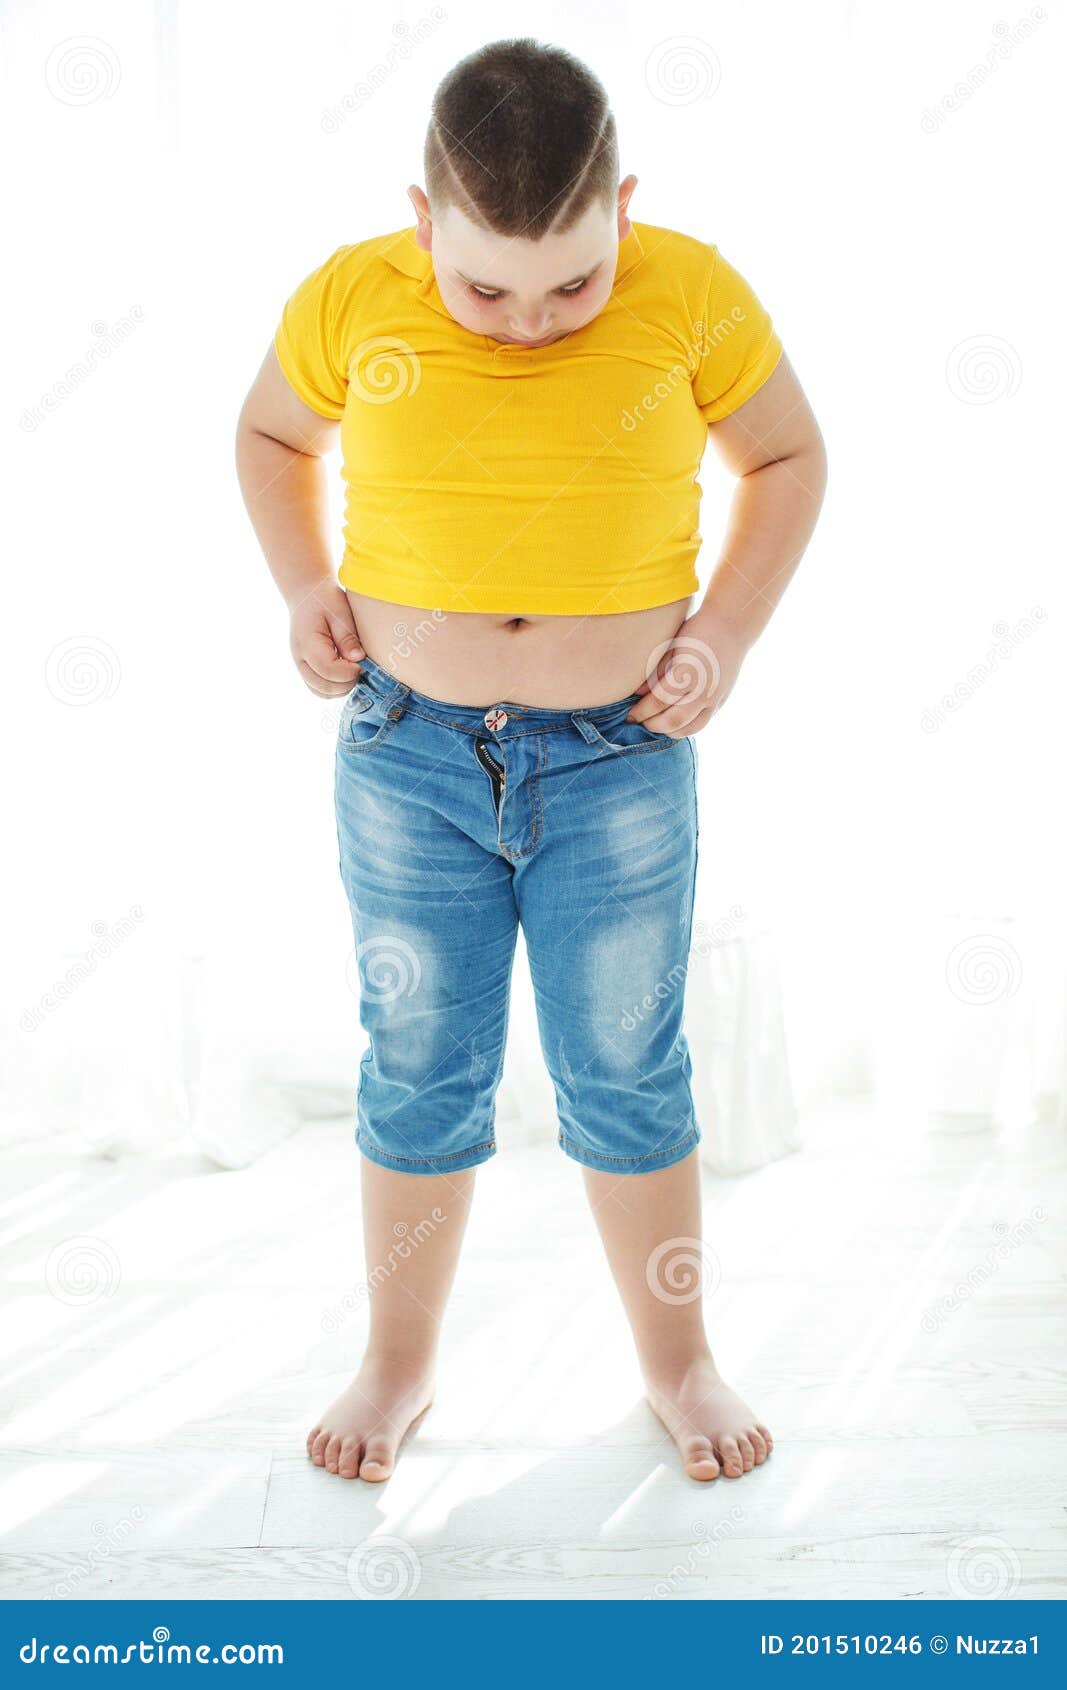 超重的胖男孩独自在家看电视时吃垃圾食品 库存图片. 图片 包括有 懒惰, 位于, 白种人, 食物, 筹码 - 194281861